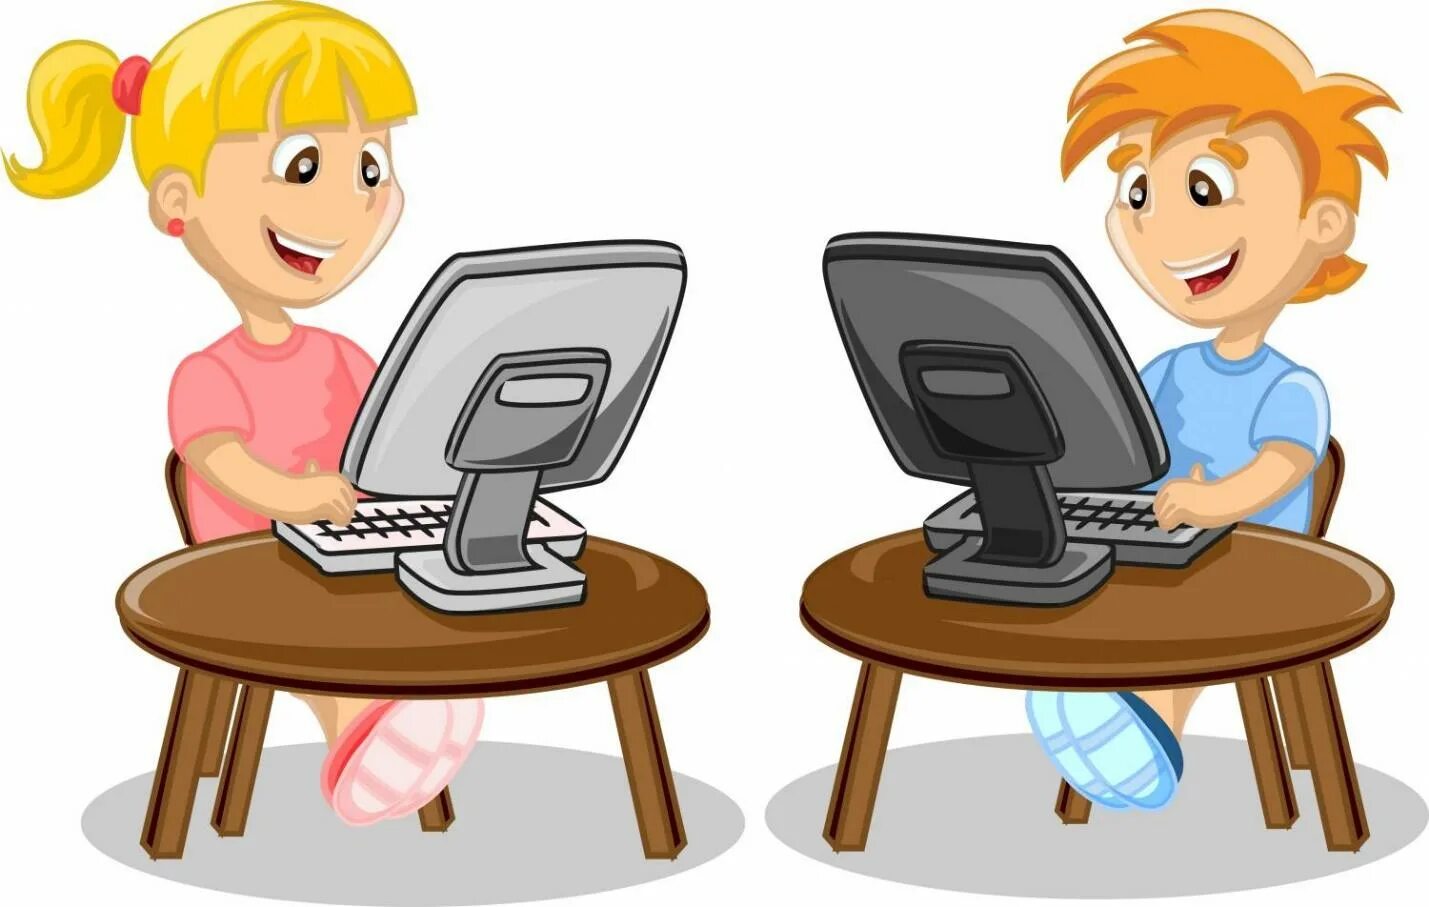 Картинка в инете. Ученик за компьютером. Ребенок за компьютером. Компьютер для детей. Компьютер иллюстрация.